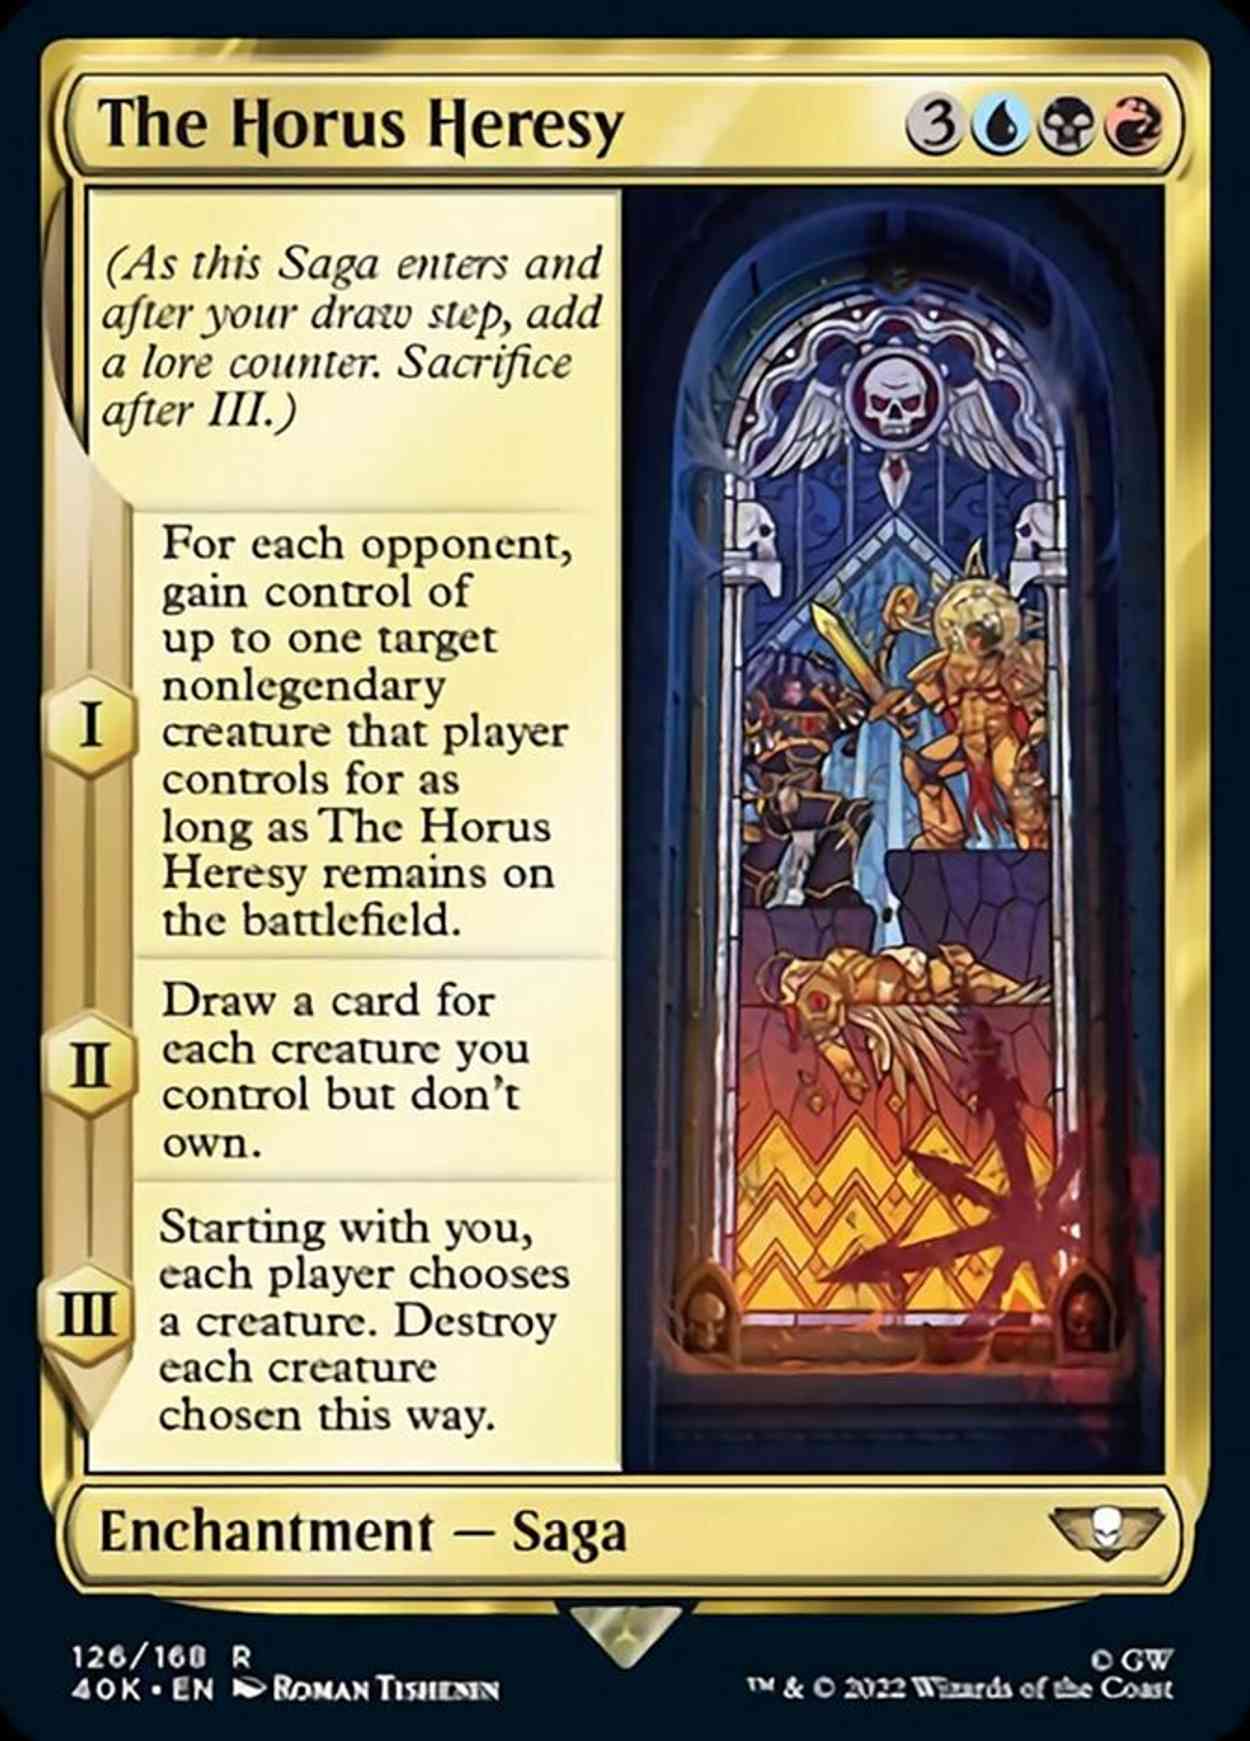 The Horus Heresy magic card front